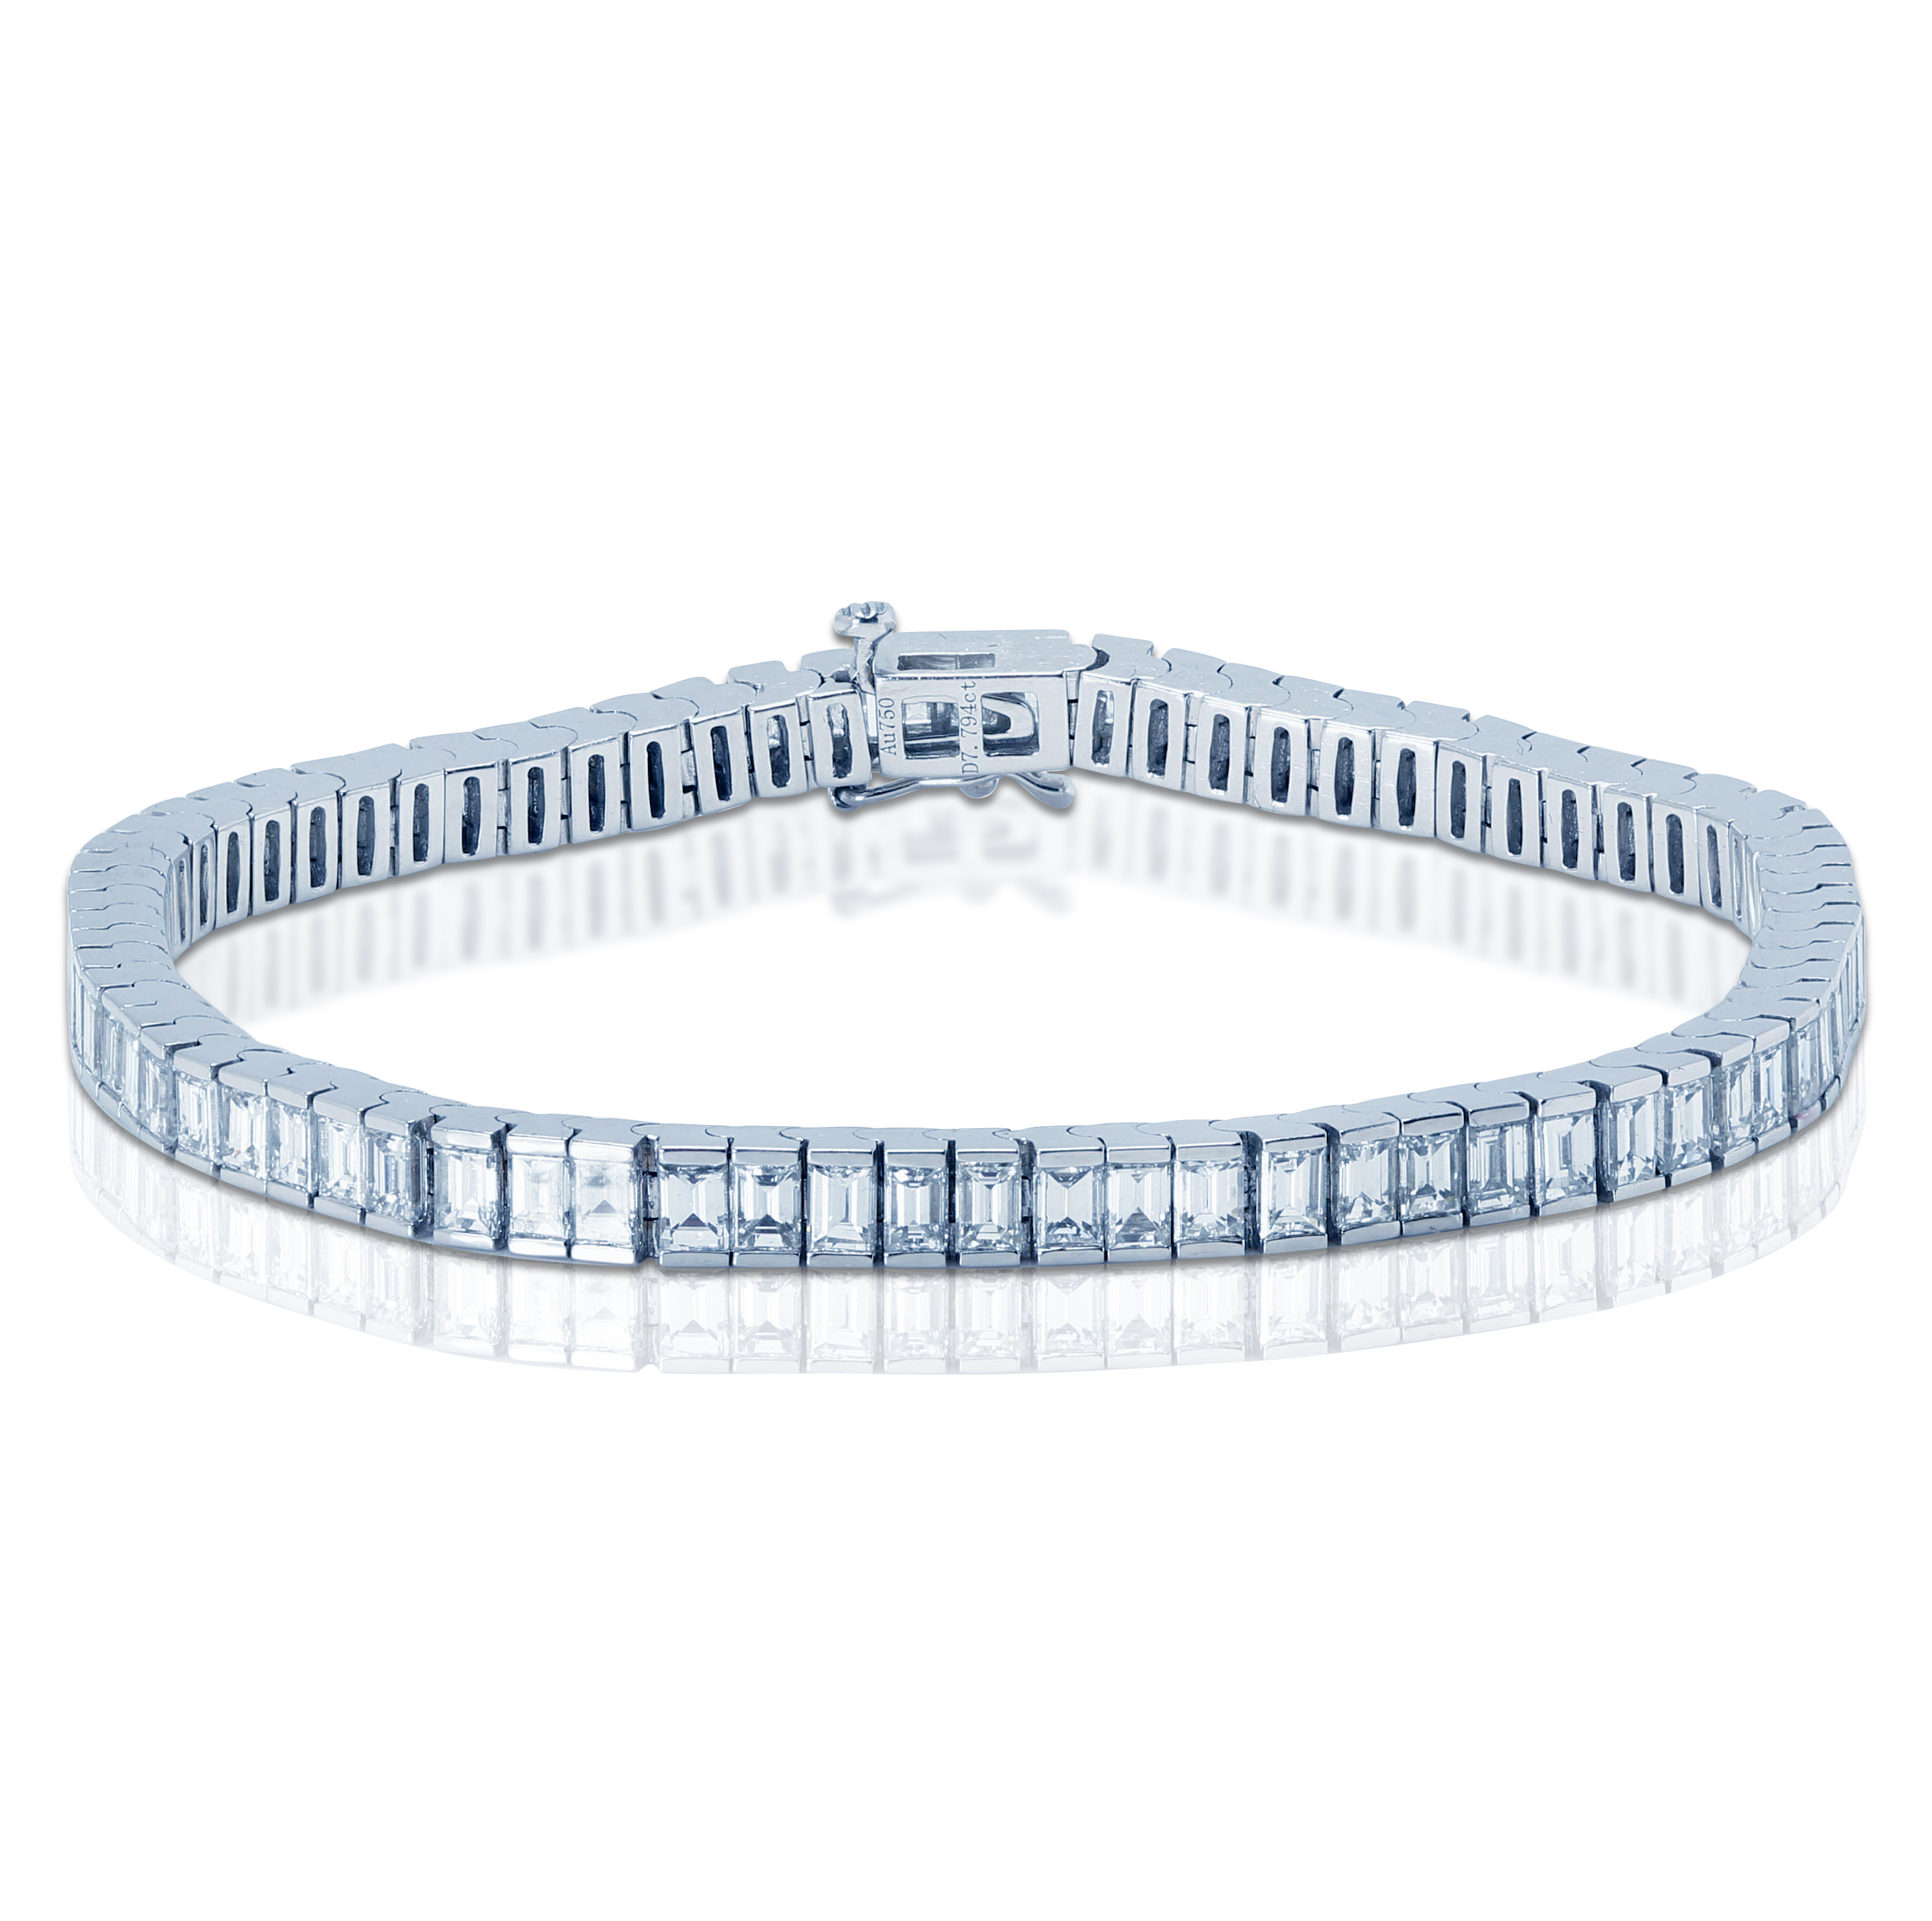 7 Carat Baguette Cut Diamond Tennis Bracelet